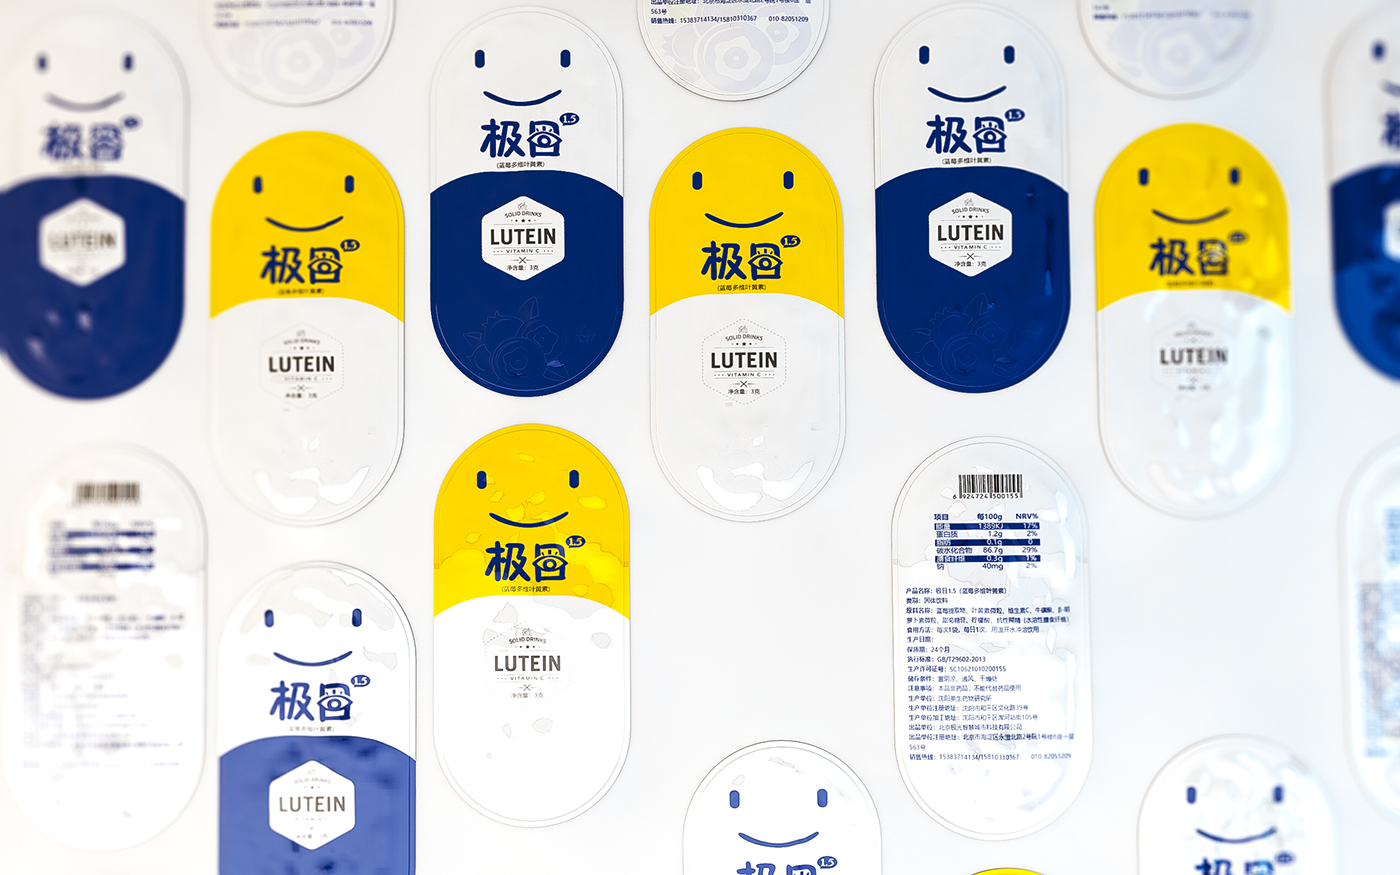 Design of blueberry lutein packaging scheme